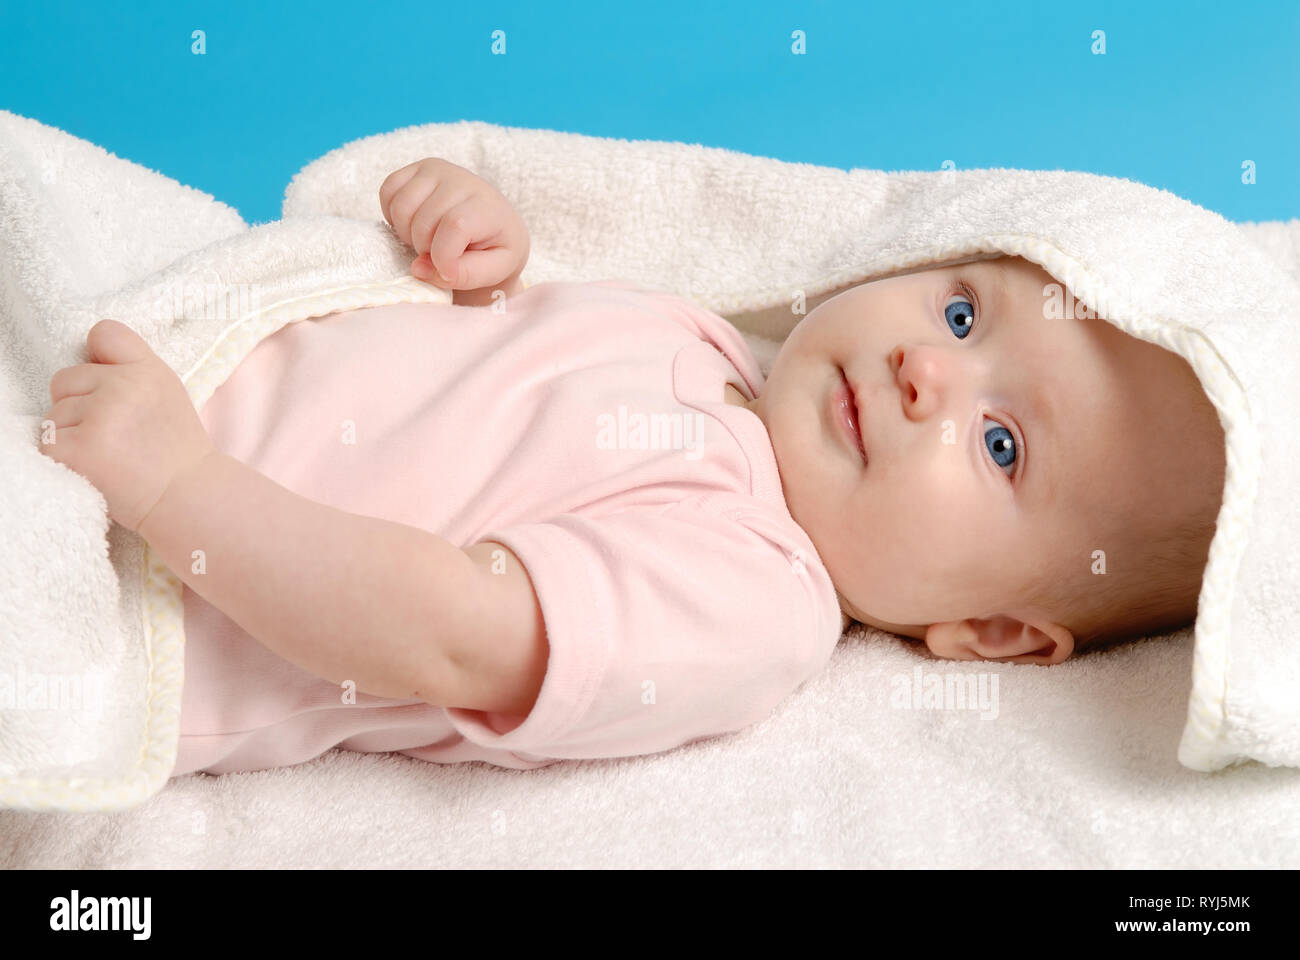 Mignon bébé fille nouveau-né, couché sur une couverture blanche Banque D'Images